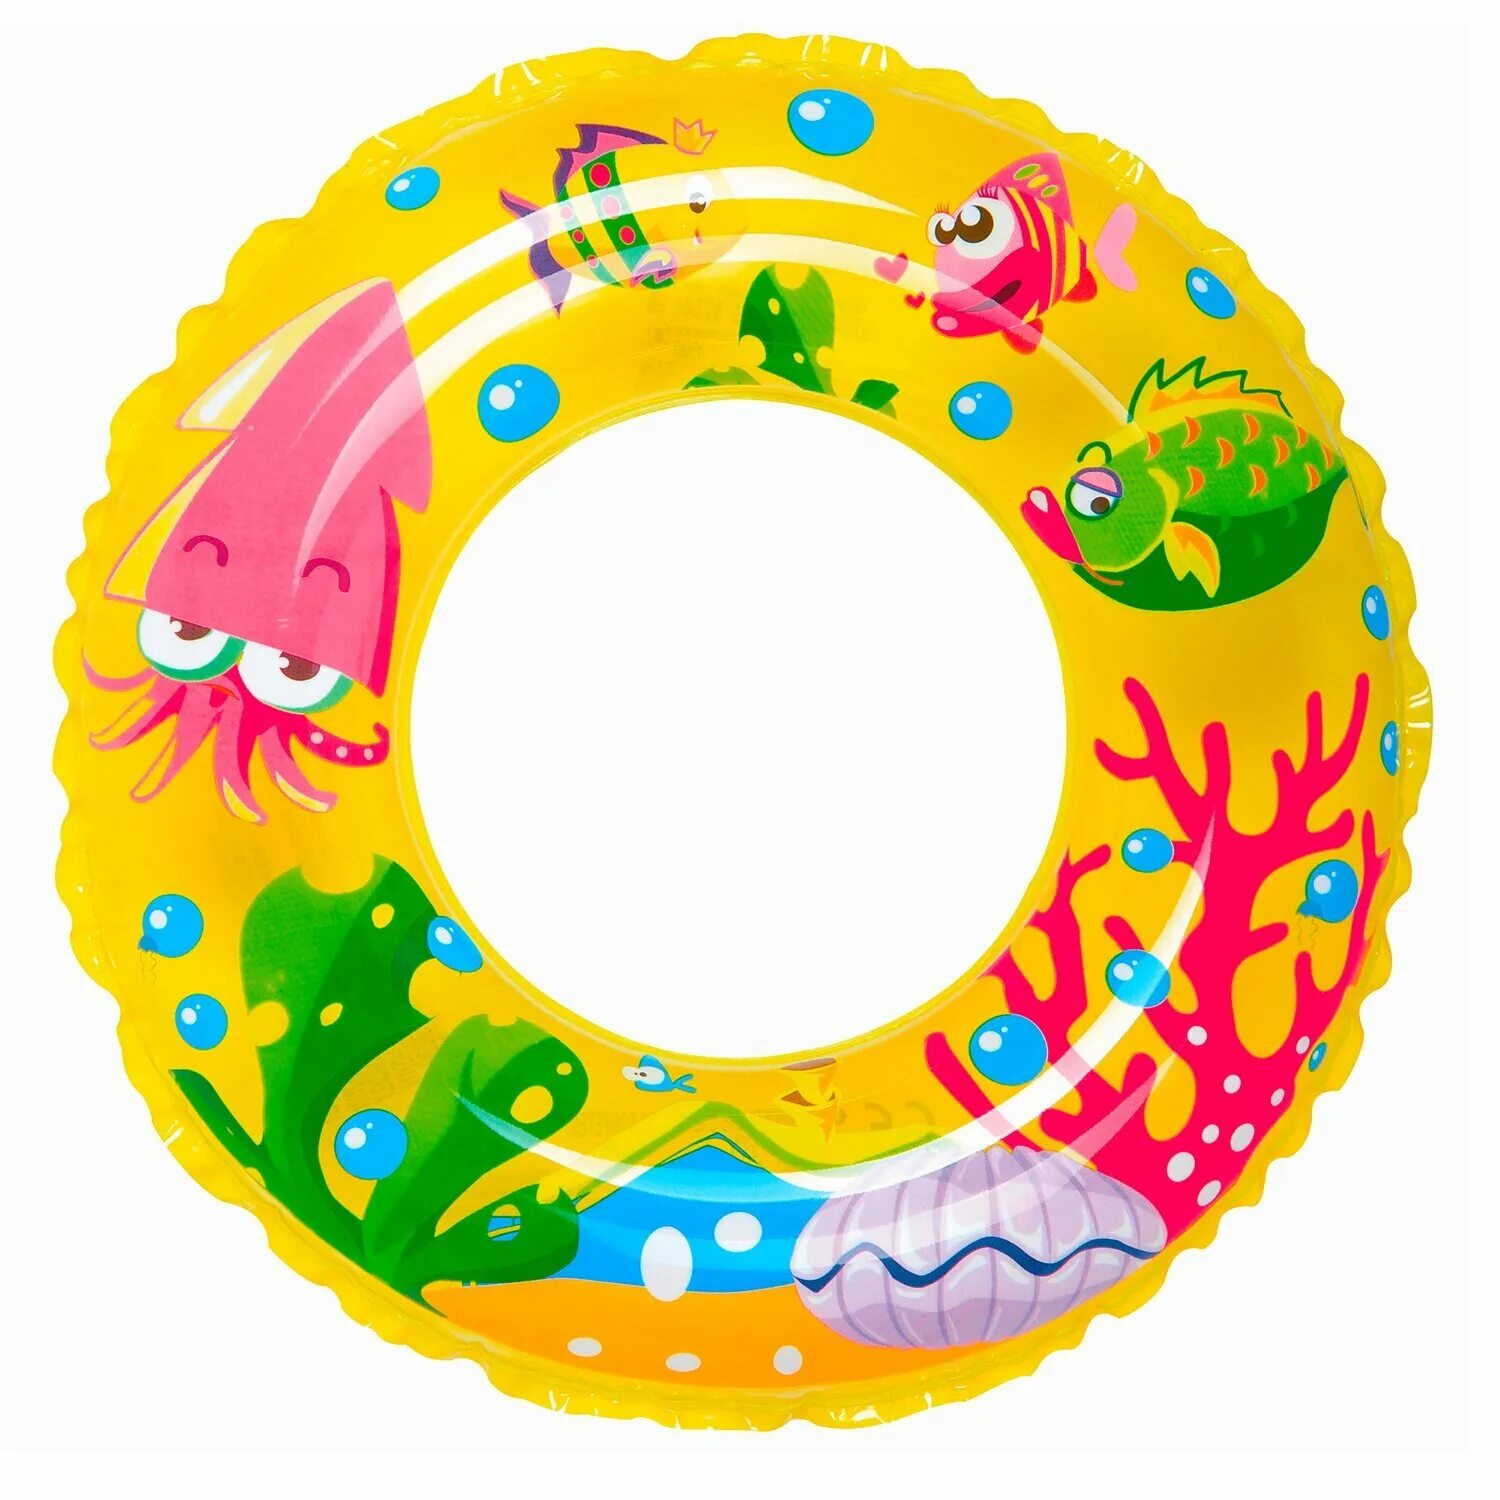 Круг для ребенка 3 лет. Надувной круг. Круг для плавания. Спасательный круг для детей. Круг надувной для плавания детский.